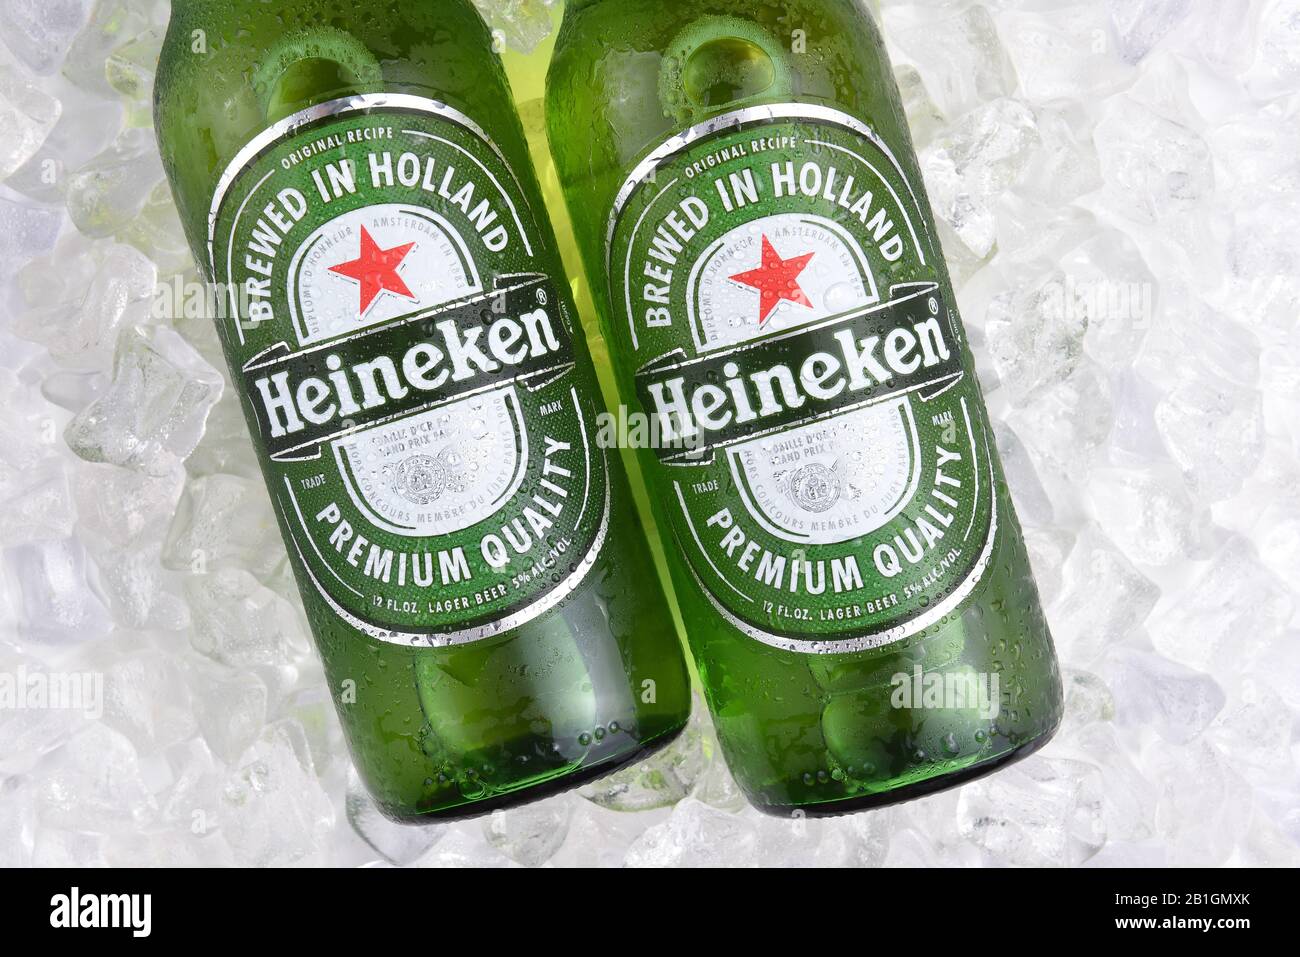 IRVINE, CA - MAY 29, 2017: Heineken Beer bottles closeup. Since 1975, most Heineken beer has been brewed at the brewery in Zoeterwoude, Netherlands. Stock Photo